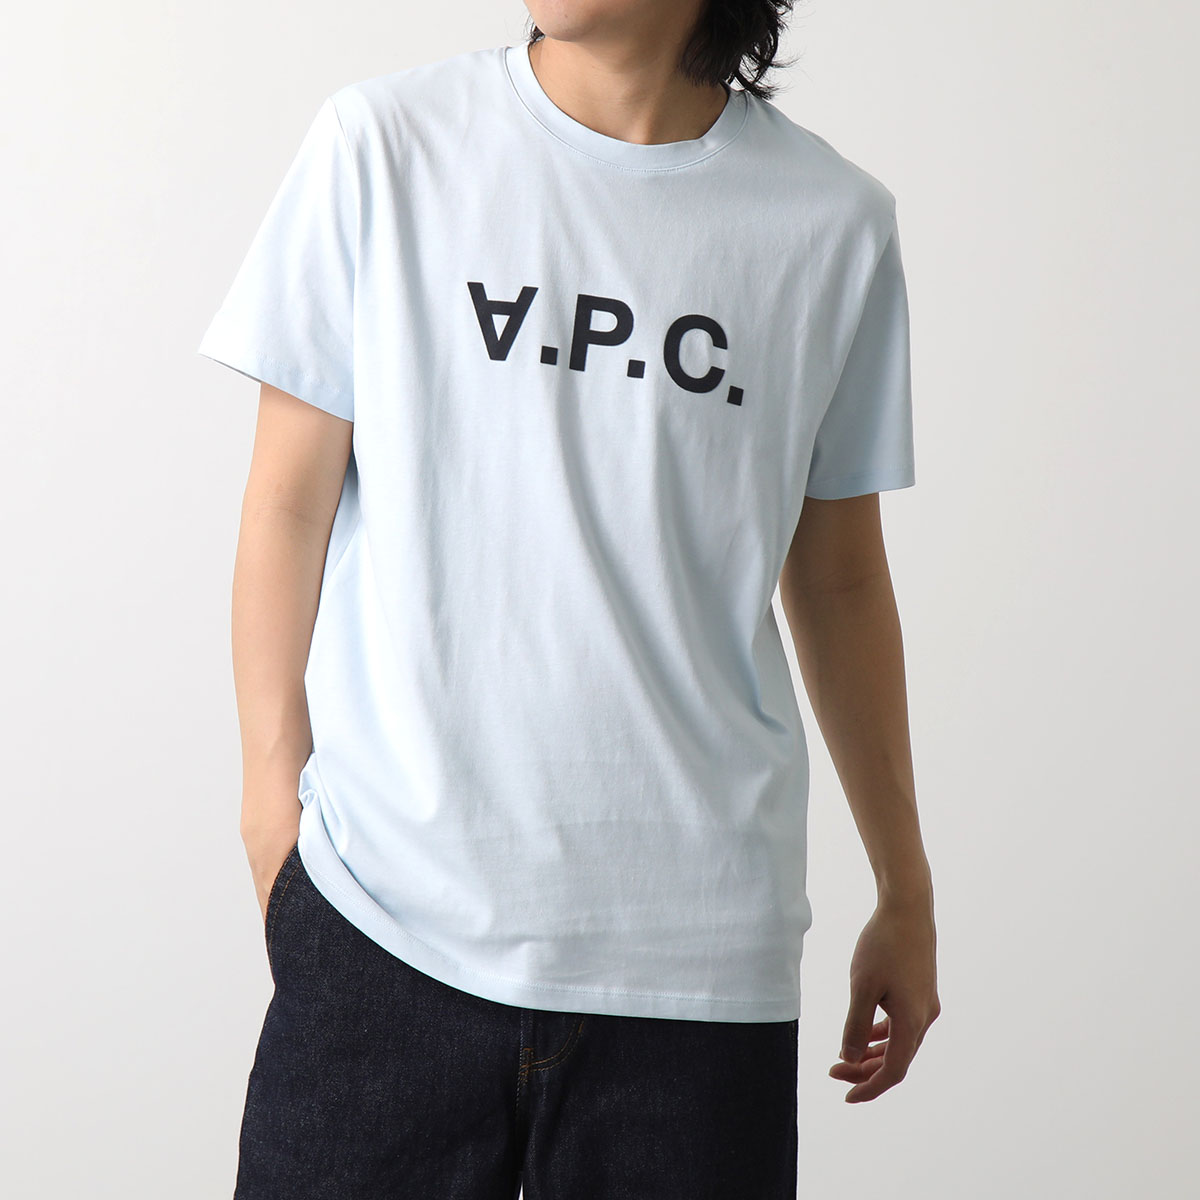 APC A.P.C. アーペーセー Tシャツ VPC COBQX H26943 メンズ クルー 